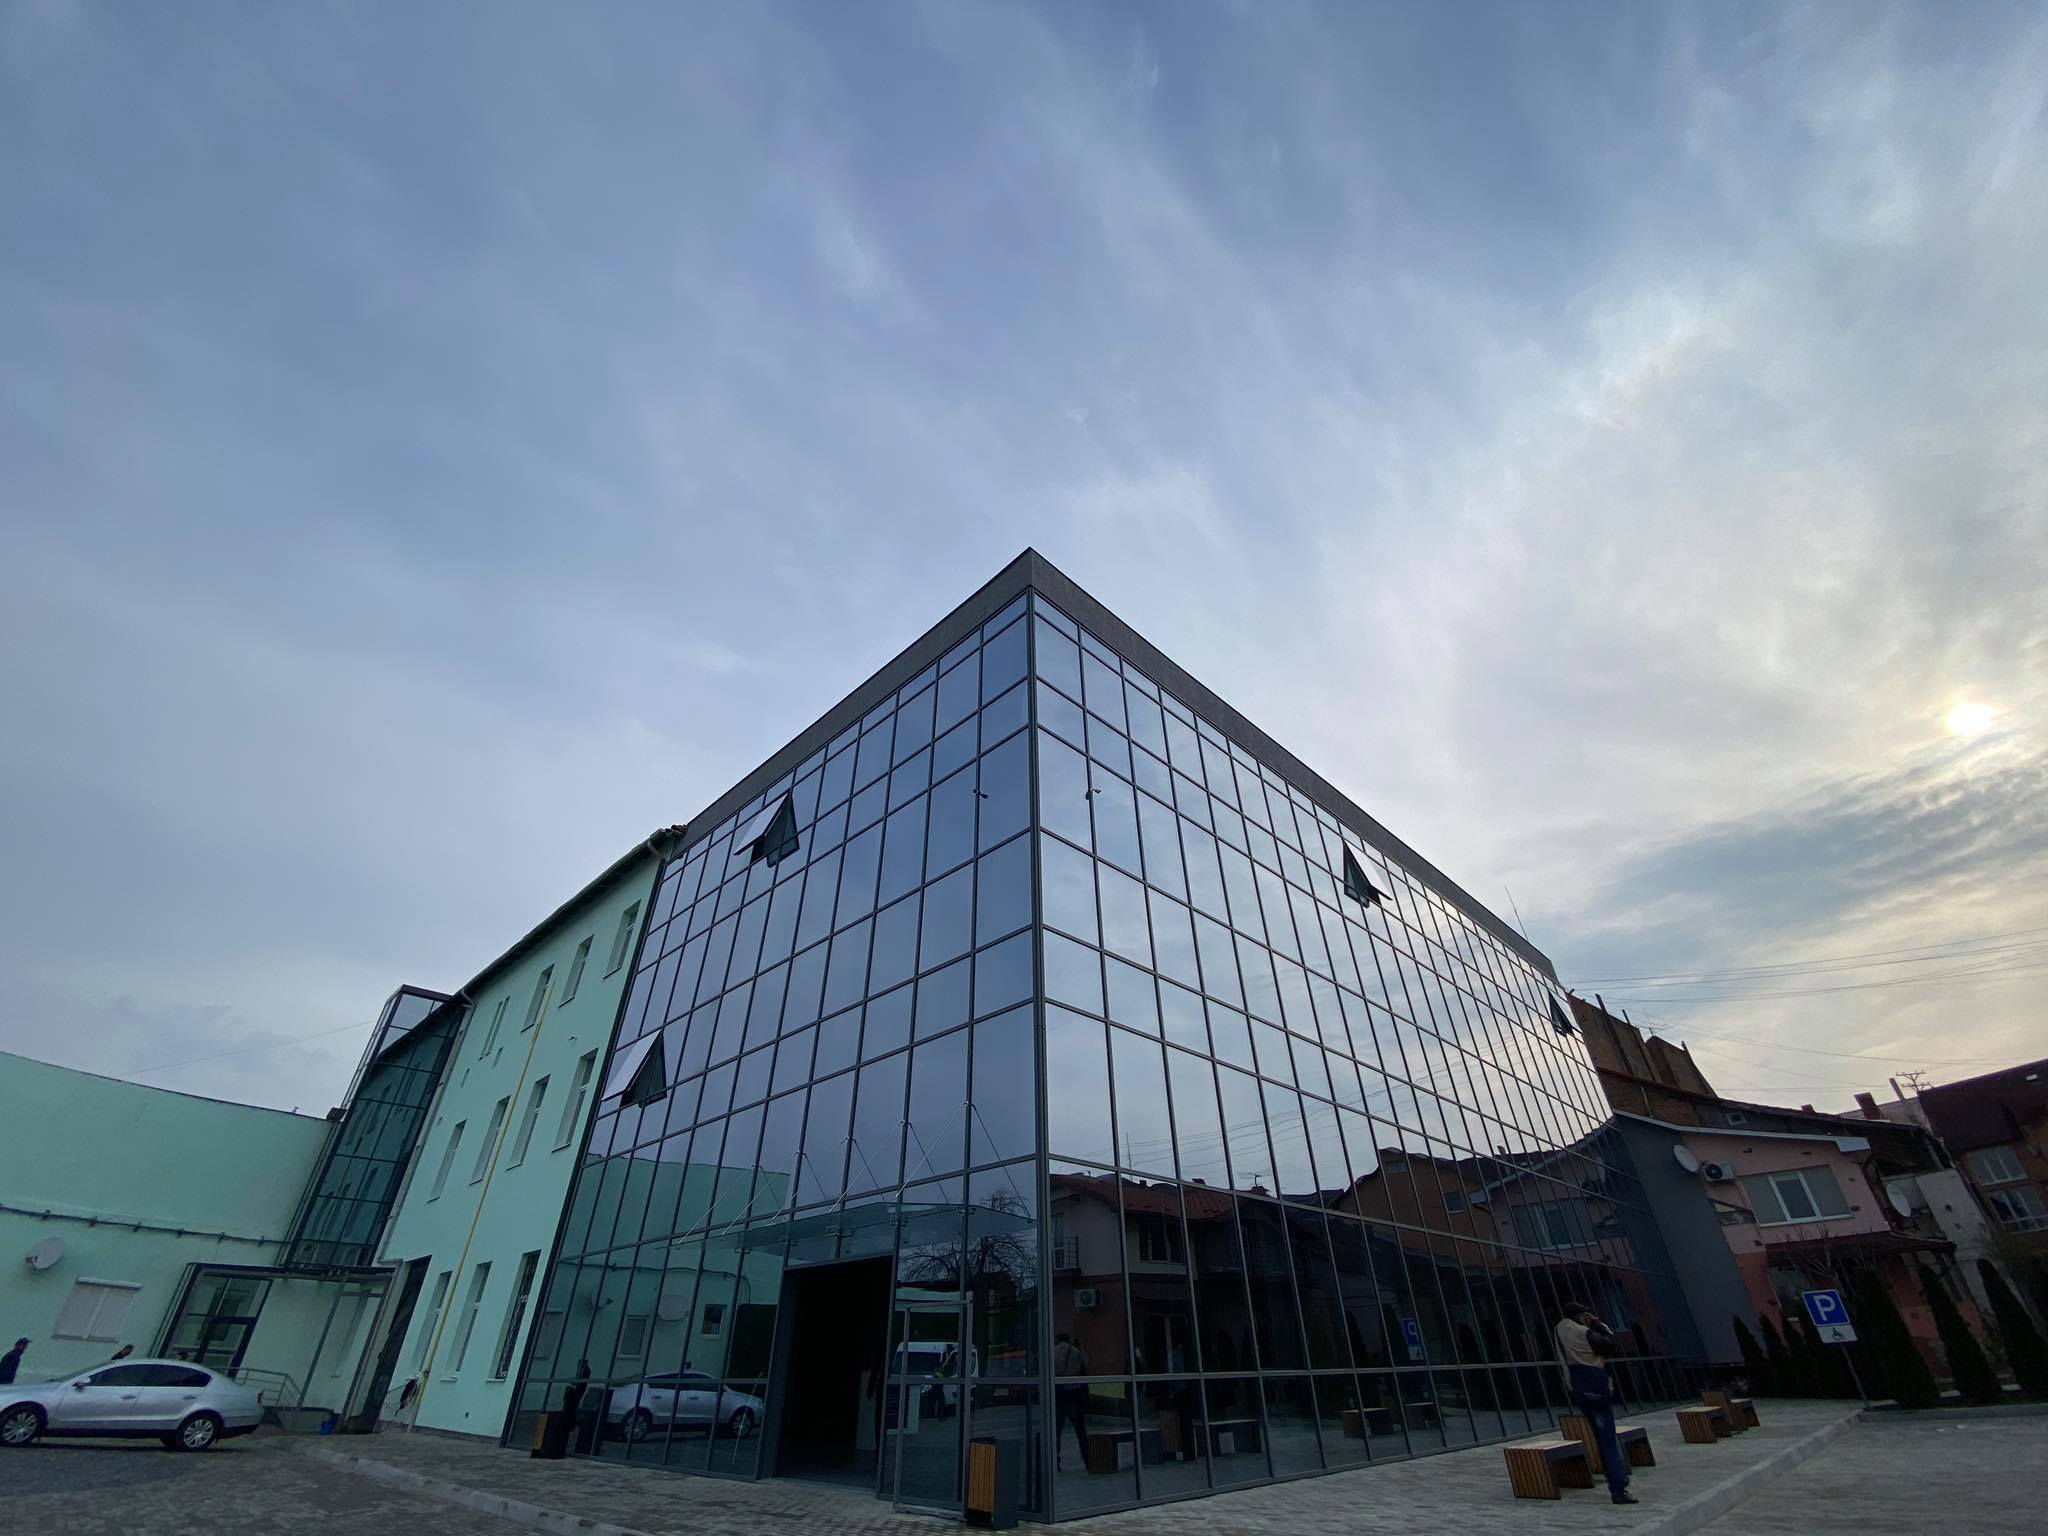 Центр надання адміністративних послуг - найбільша будівля на Закарпатті, збудована за сучасними енергоефективними технологіями з скляними стінами та перегородками. 